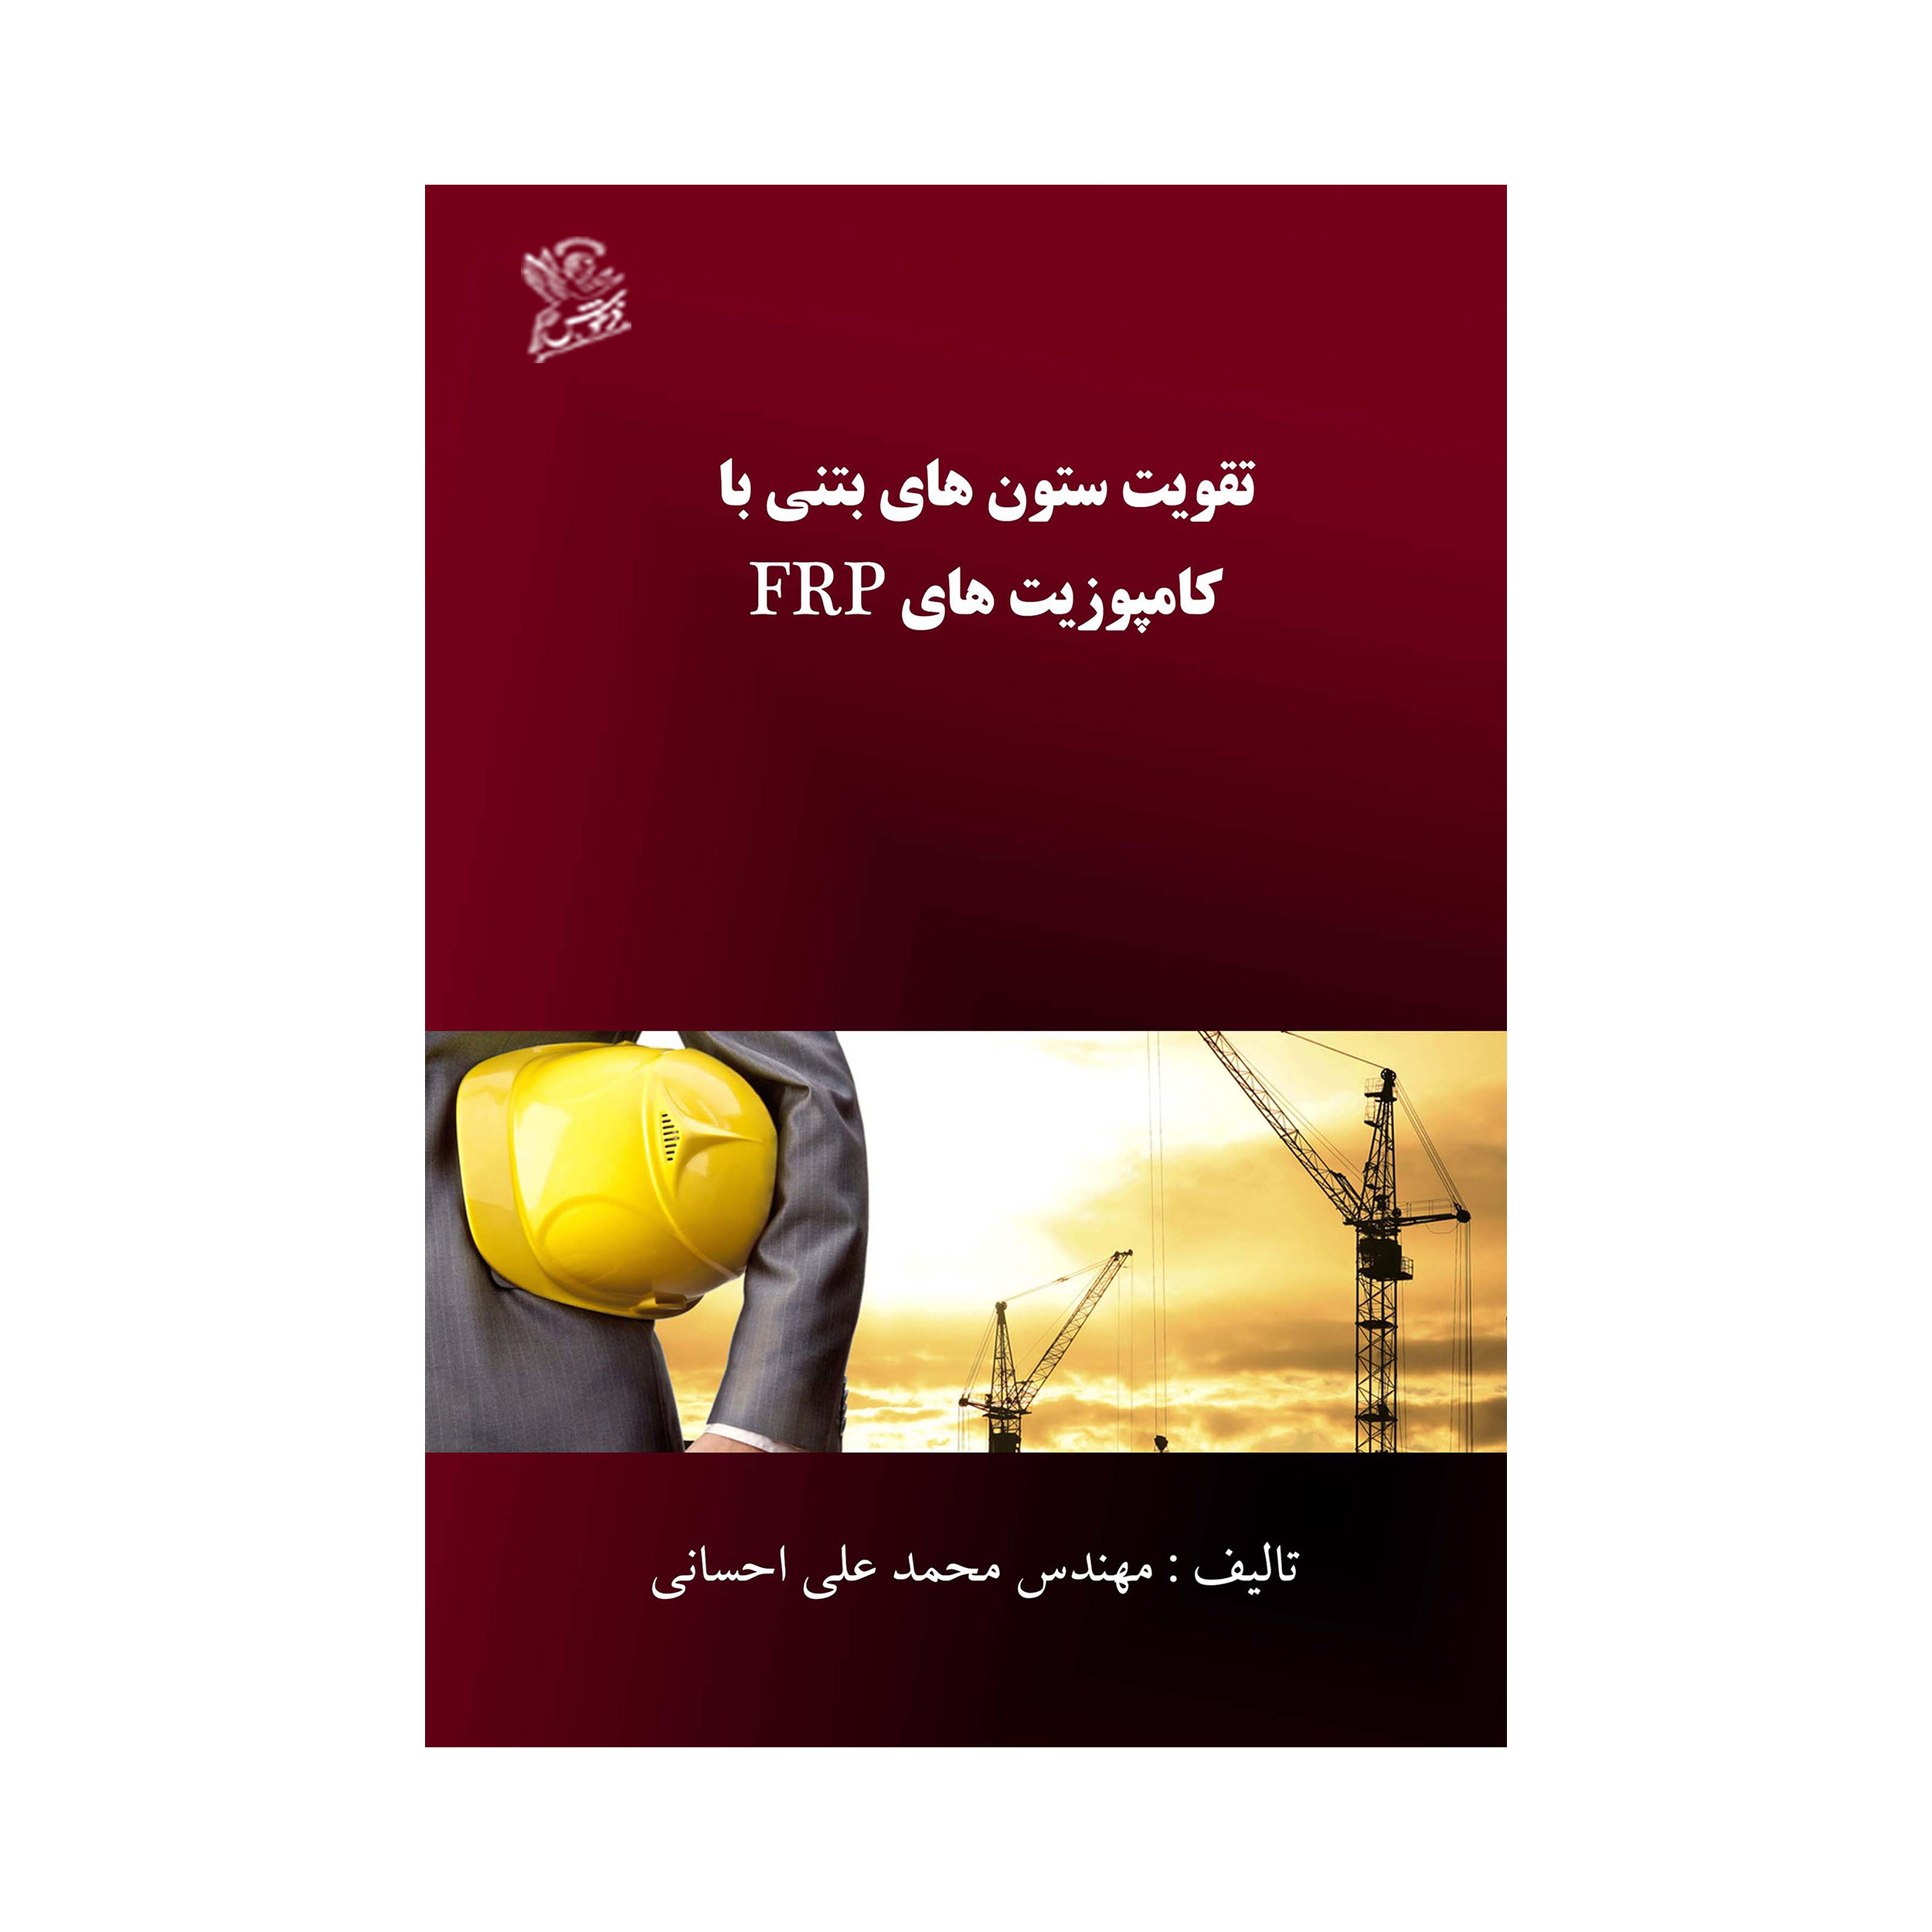 کتاب تقویت ستون های بتنی با کامپوزیت های frp اثر محمد علی احسانی نشر فرهوش